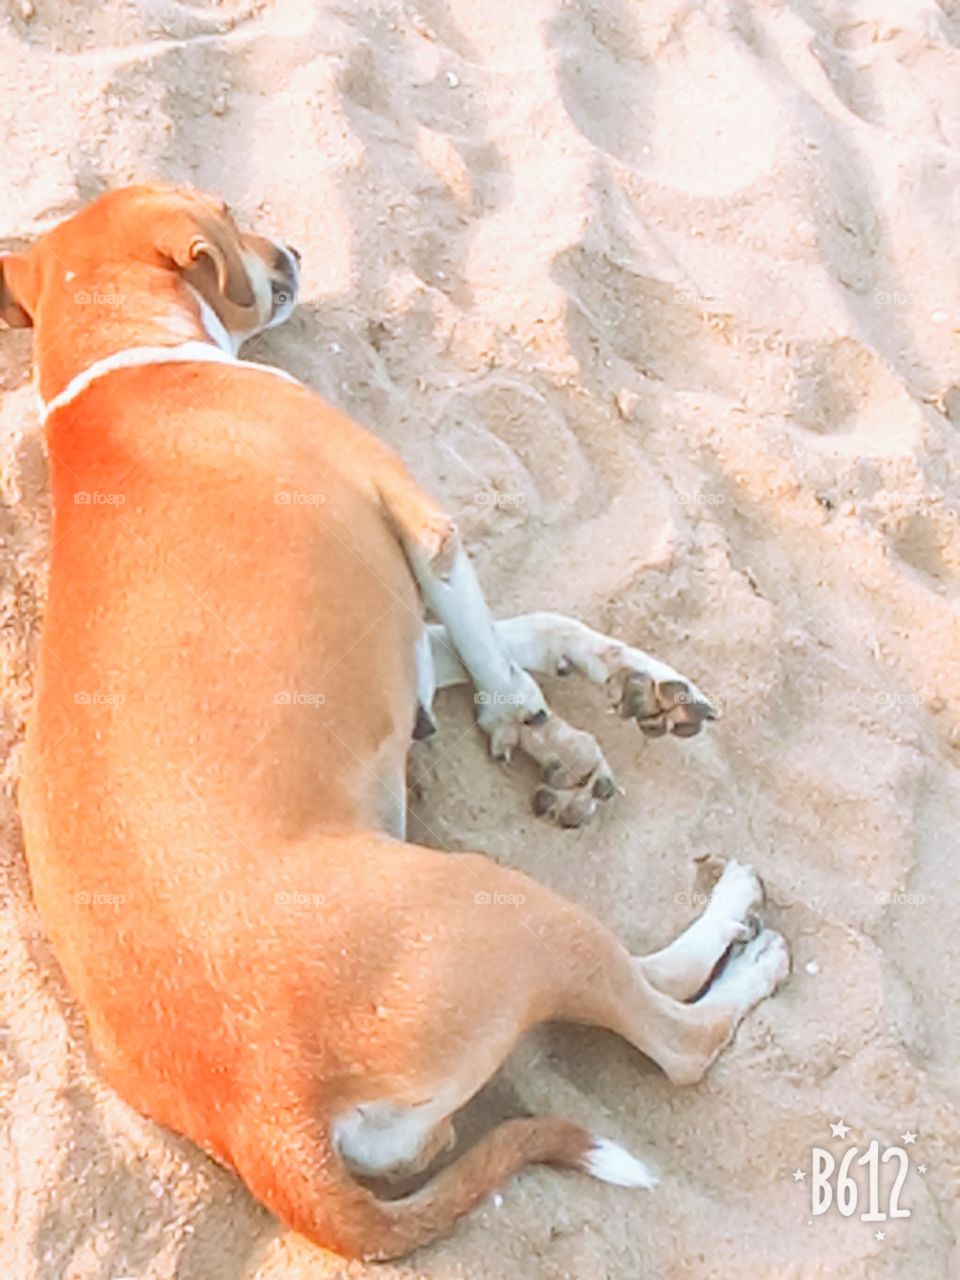 Sleeping on sand